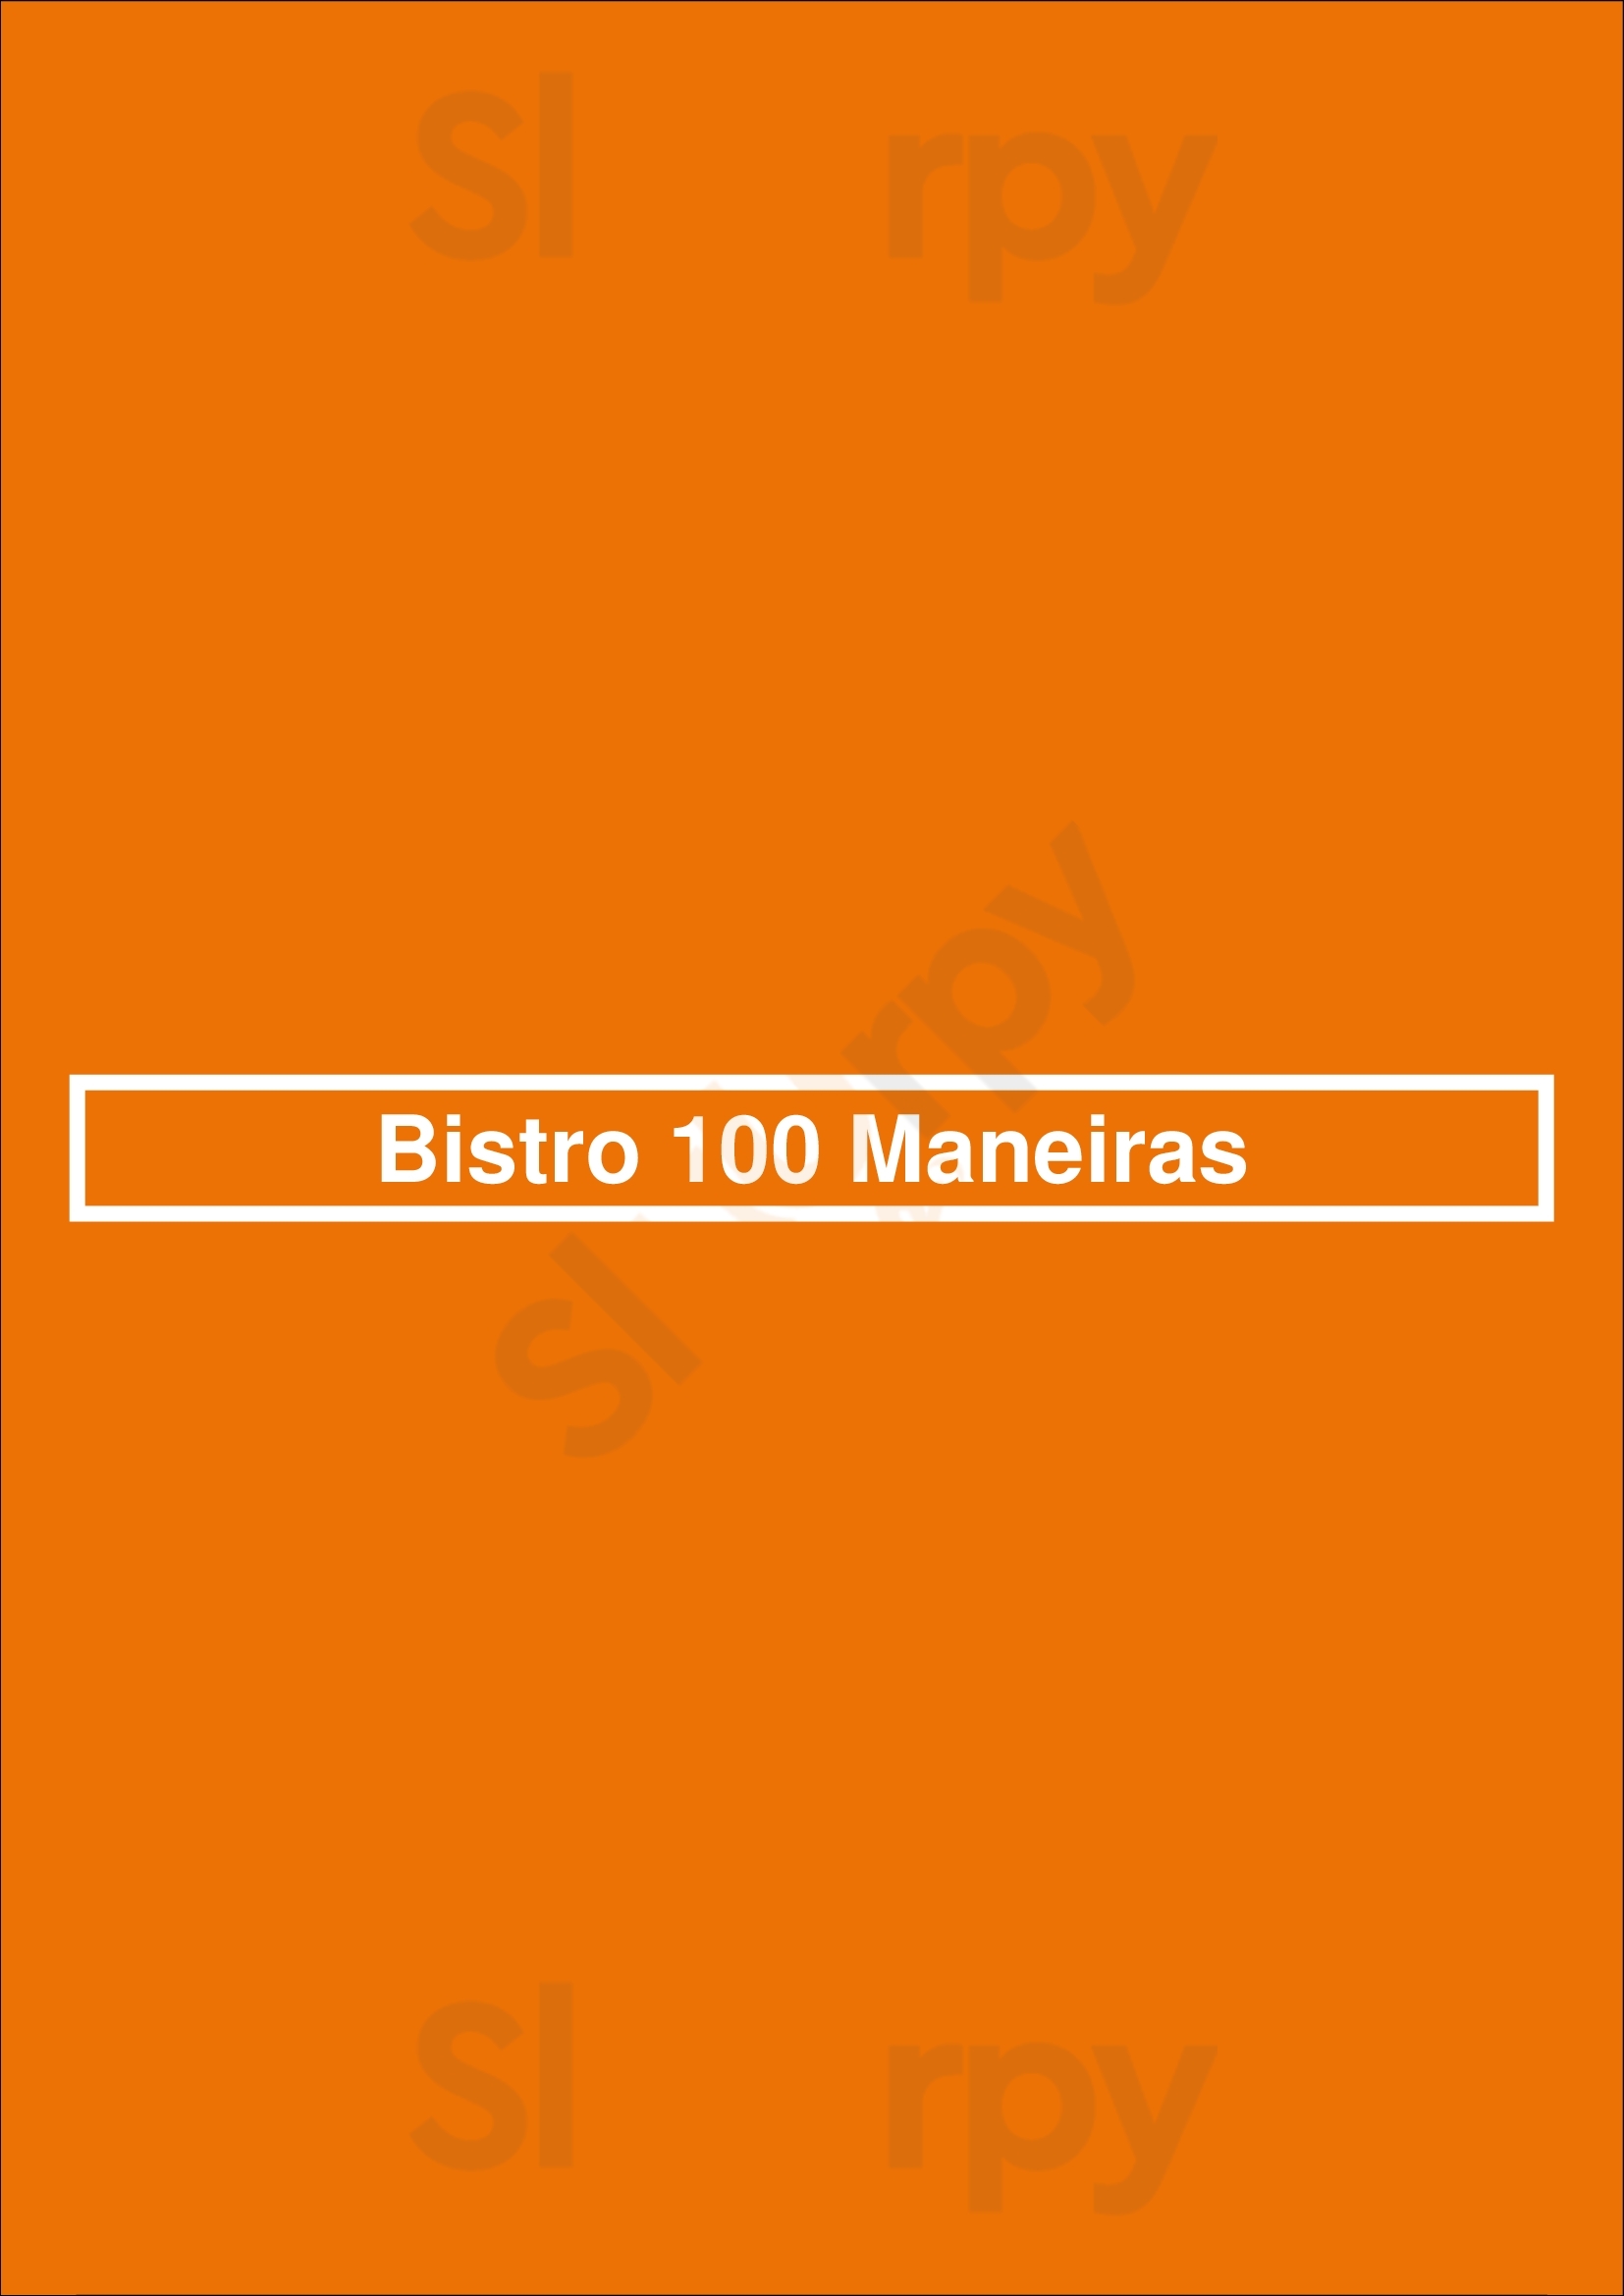 Bistro 100 Maneiras Lisboa Menu - 1